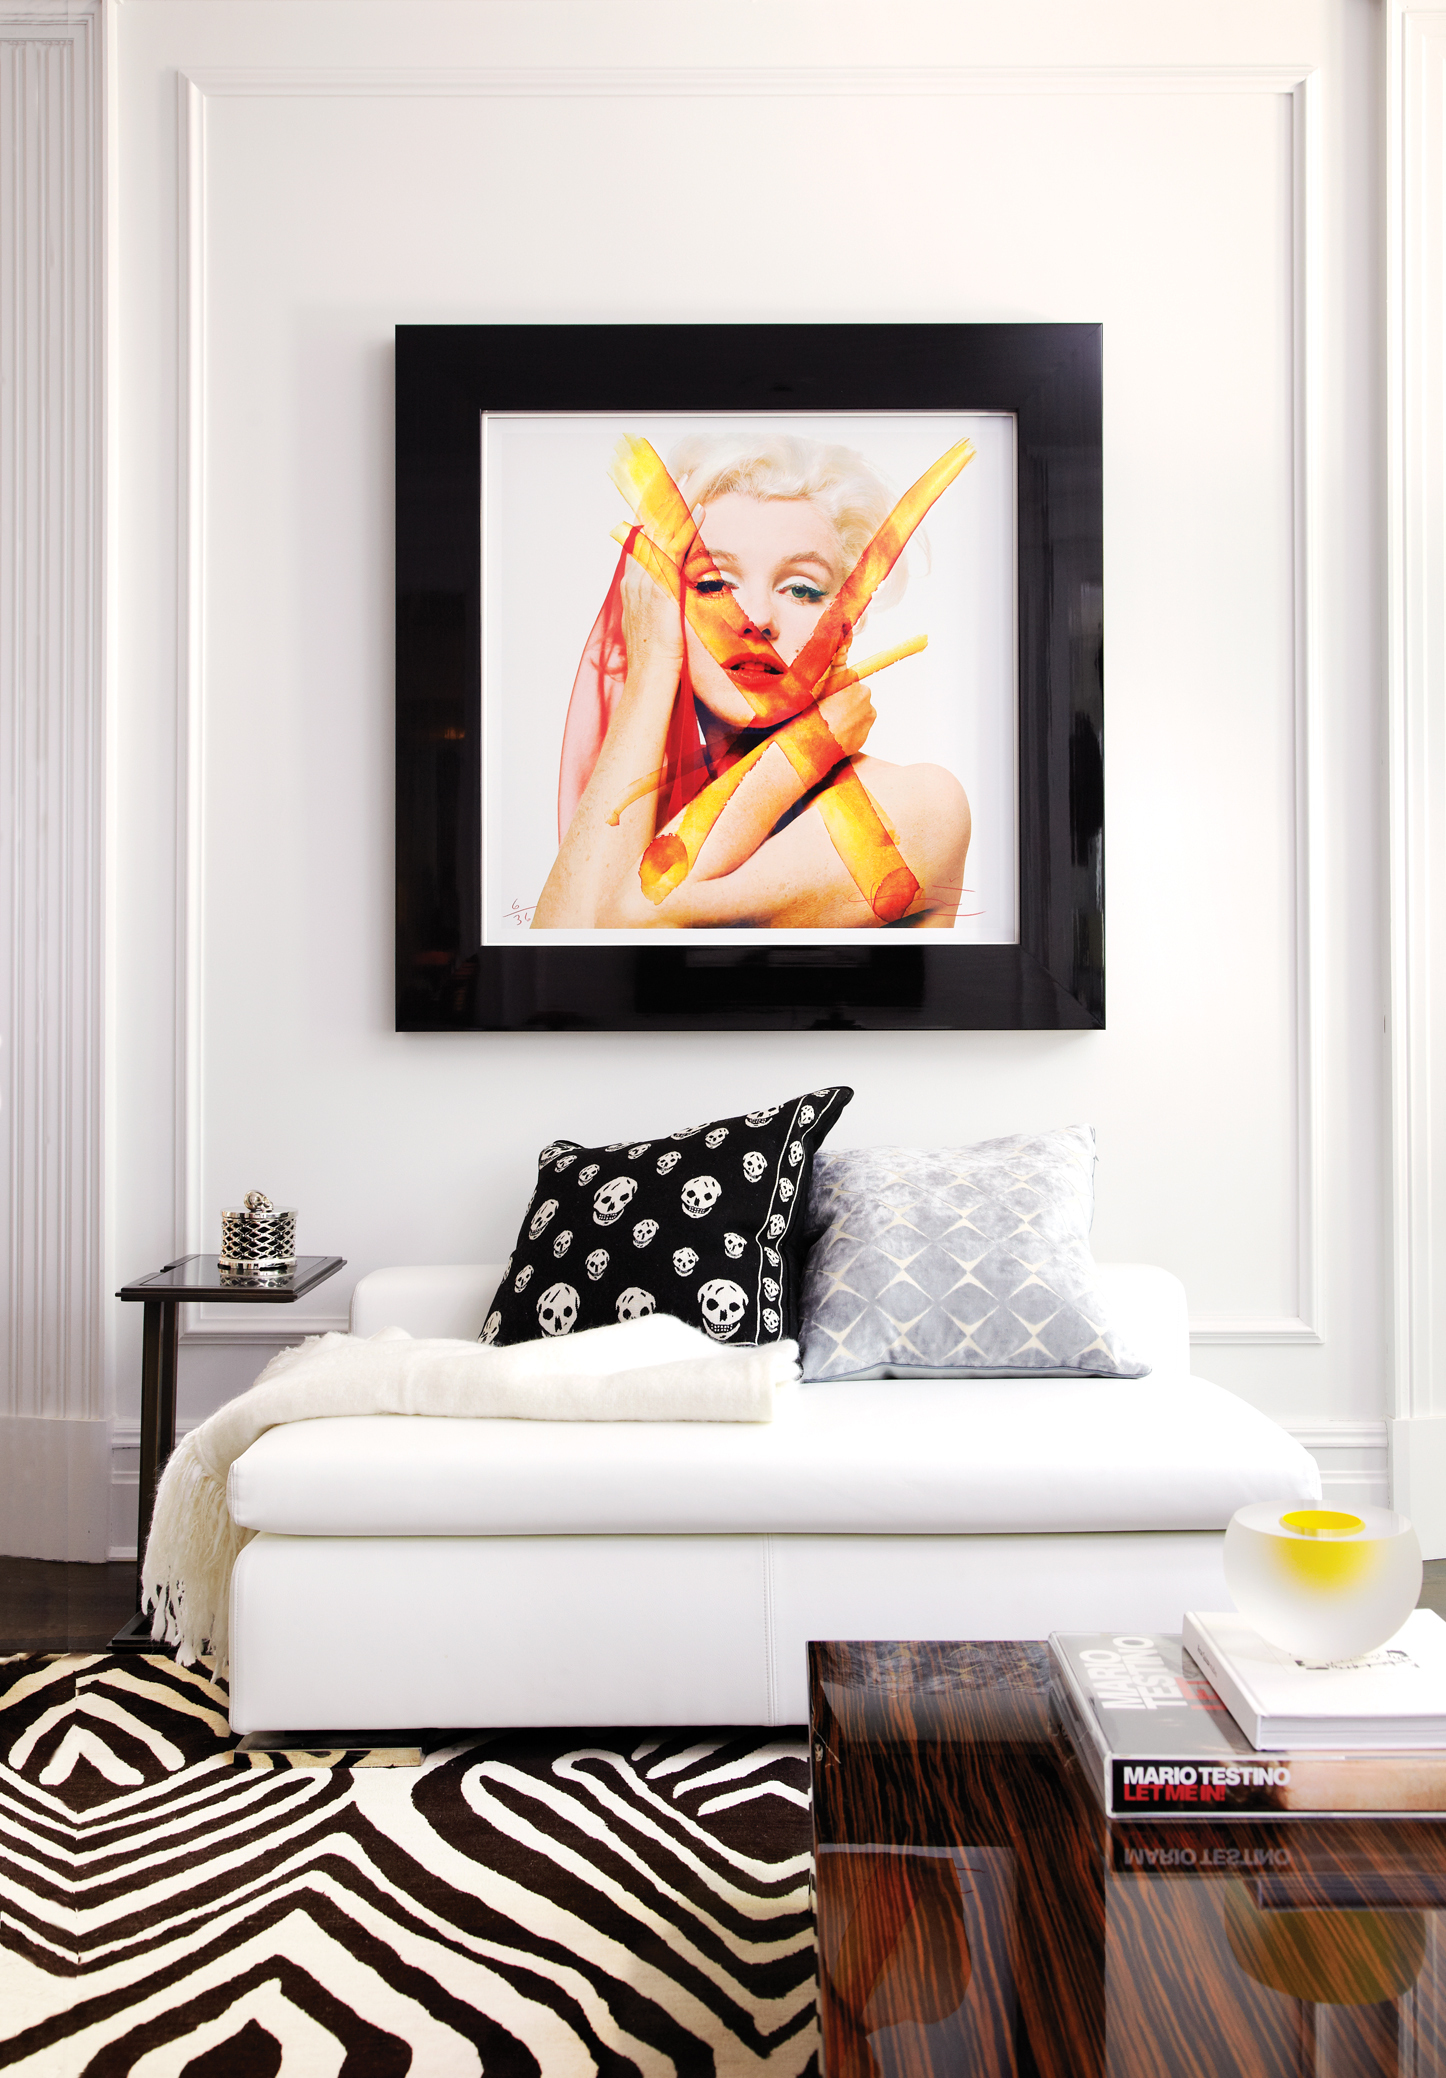 Living room, picture of Marilyn Monroe, Zebra rug, skull pillows, black and white